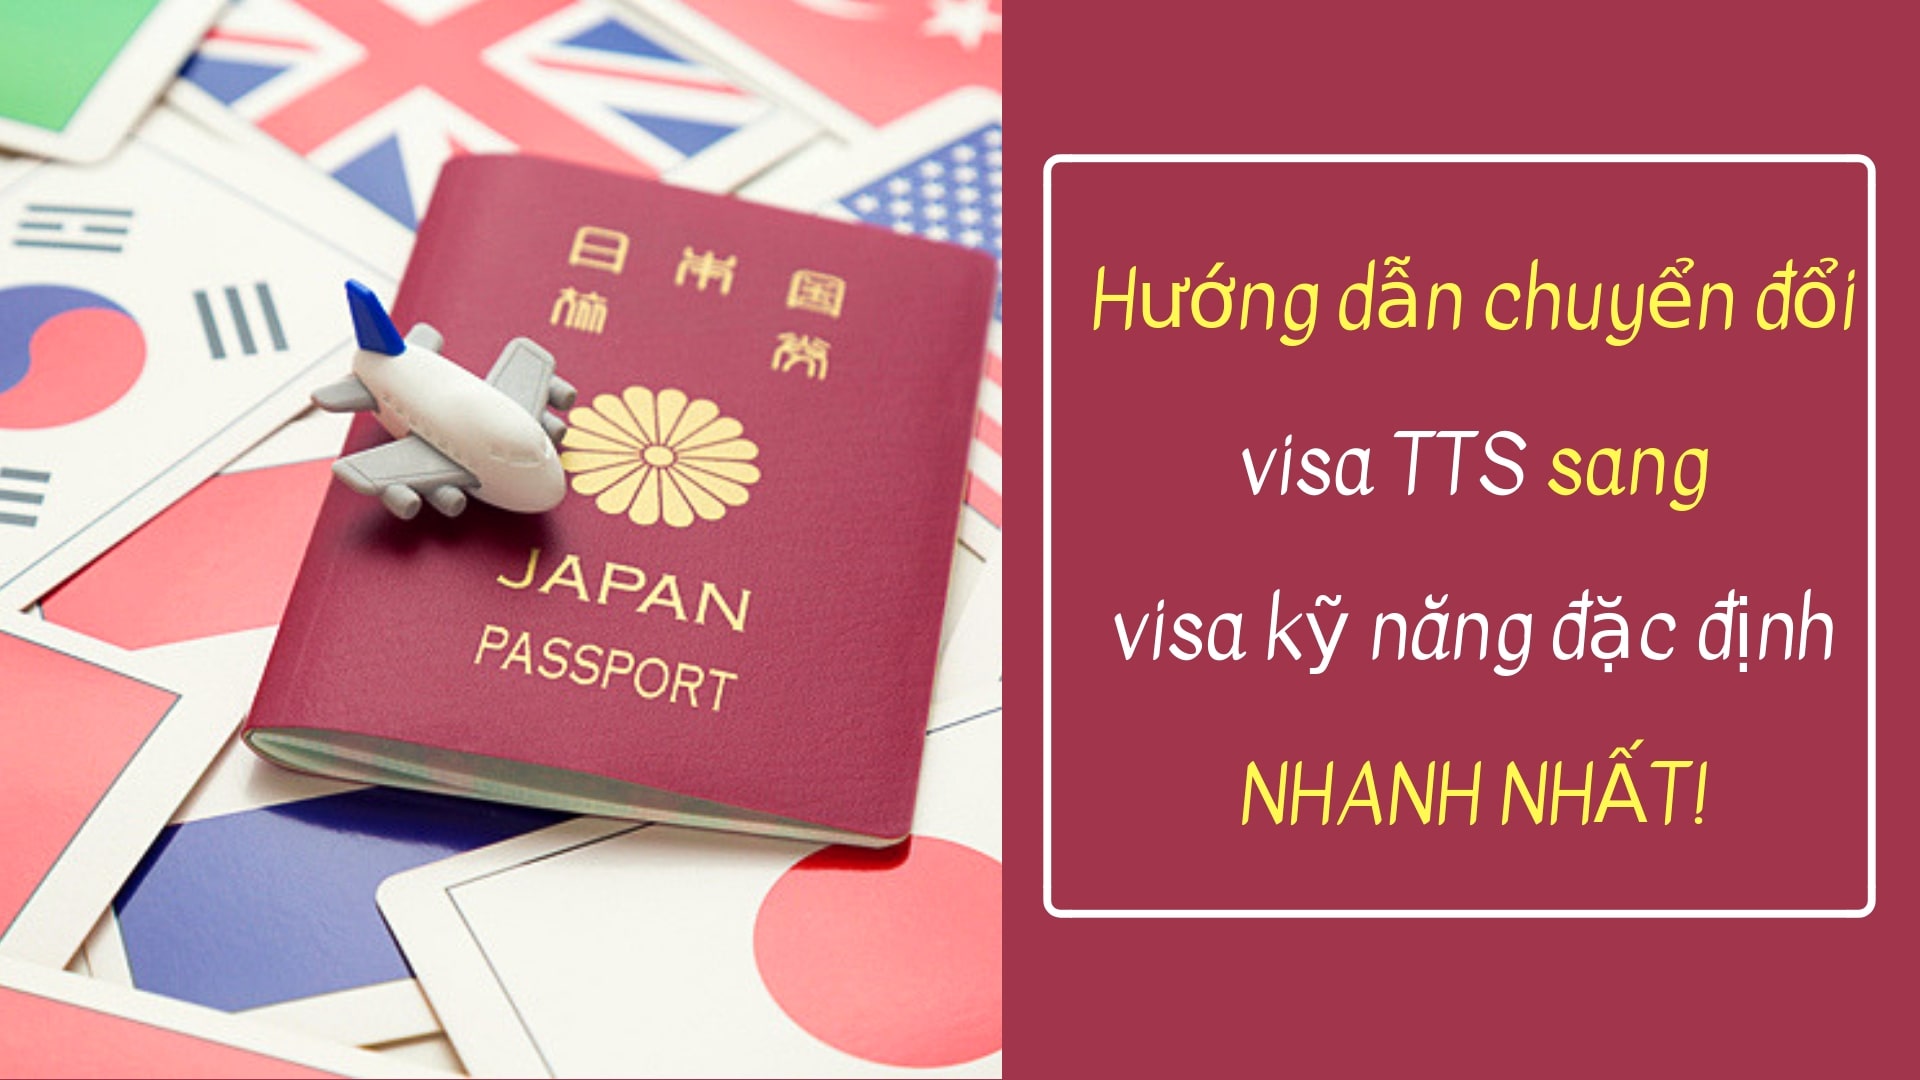 Hướng dẫn chuyển đổi visa TTS sang visa kỹ năng đặc định NHANH NHẤT!